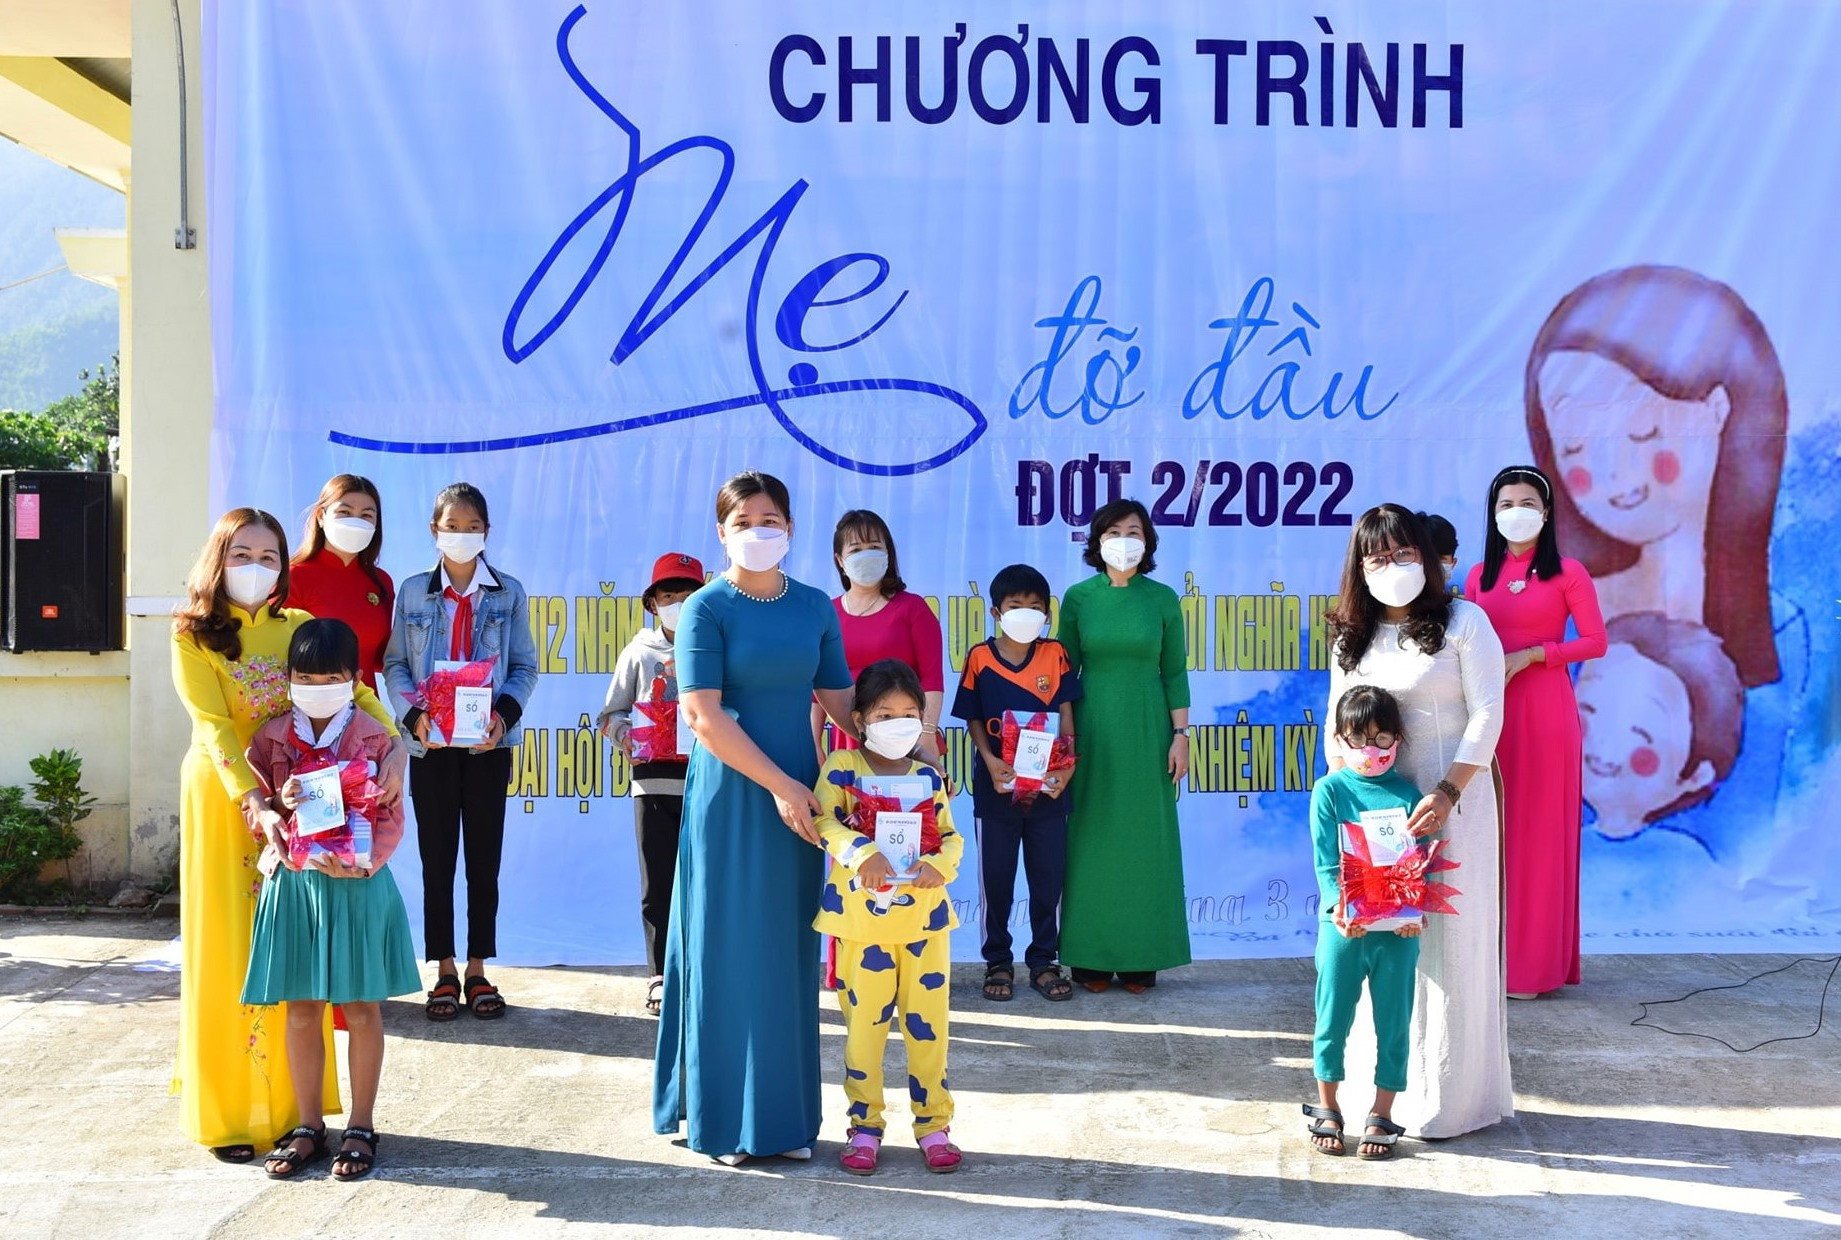 Các cấp hội hưởng ứng Chương trình “Mẹ đỡ đầu”. Trong ảnh: Hội LHPN huyện Đại Lộc nhận đỡ đầu trẻ mồ côi đợt 2 năm 2022). Ảnh: C.T.V